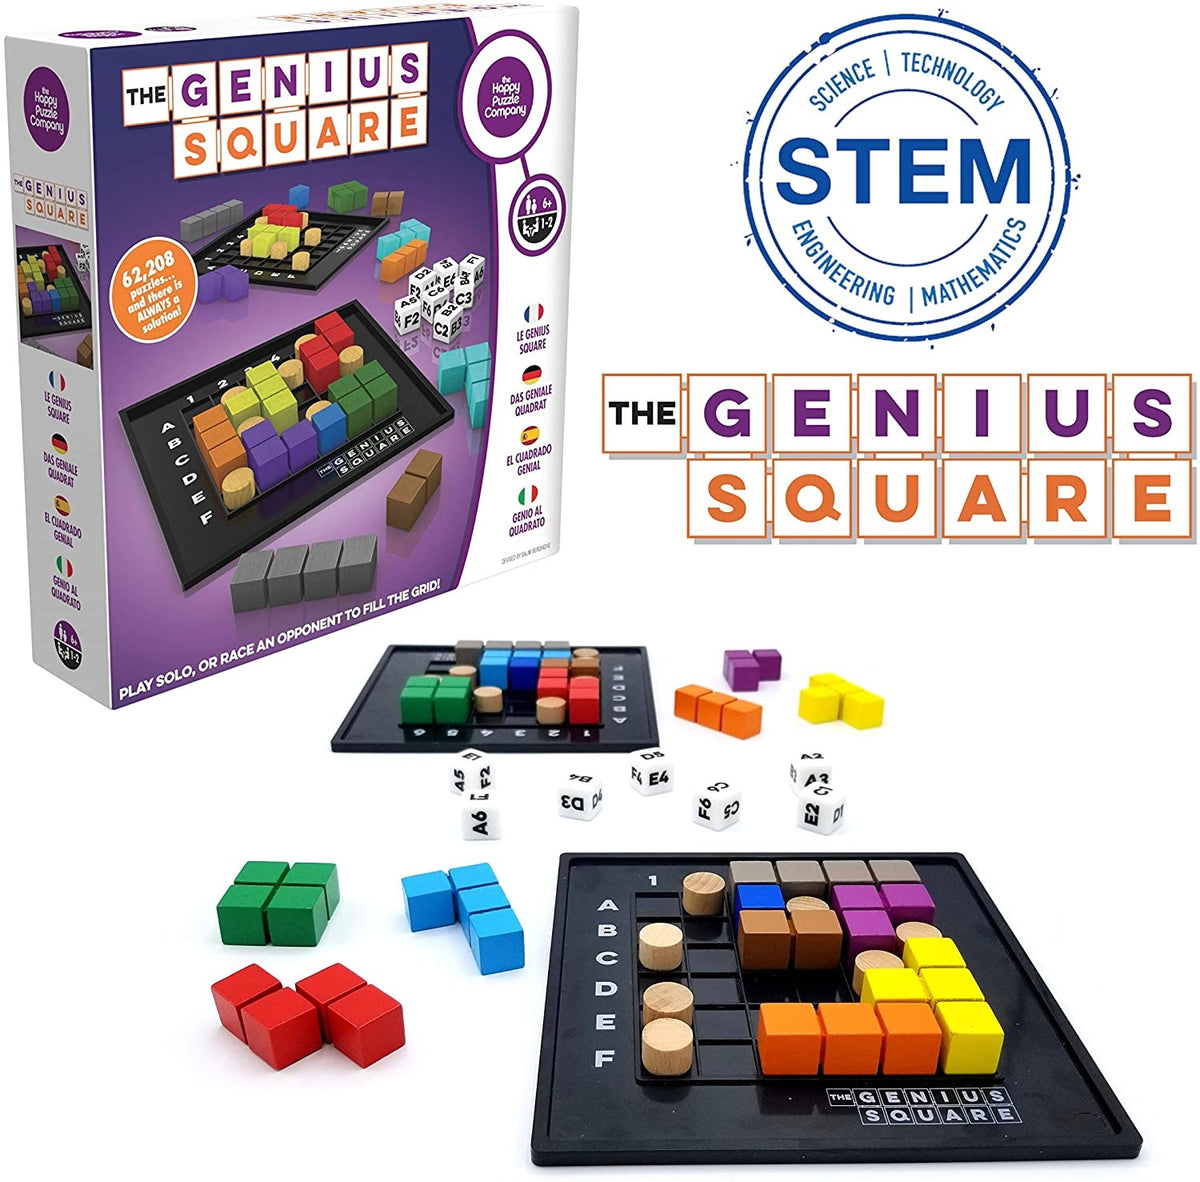 The Genius Square Cover